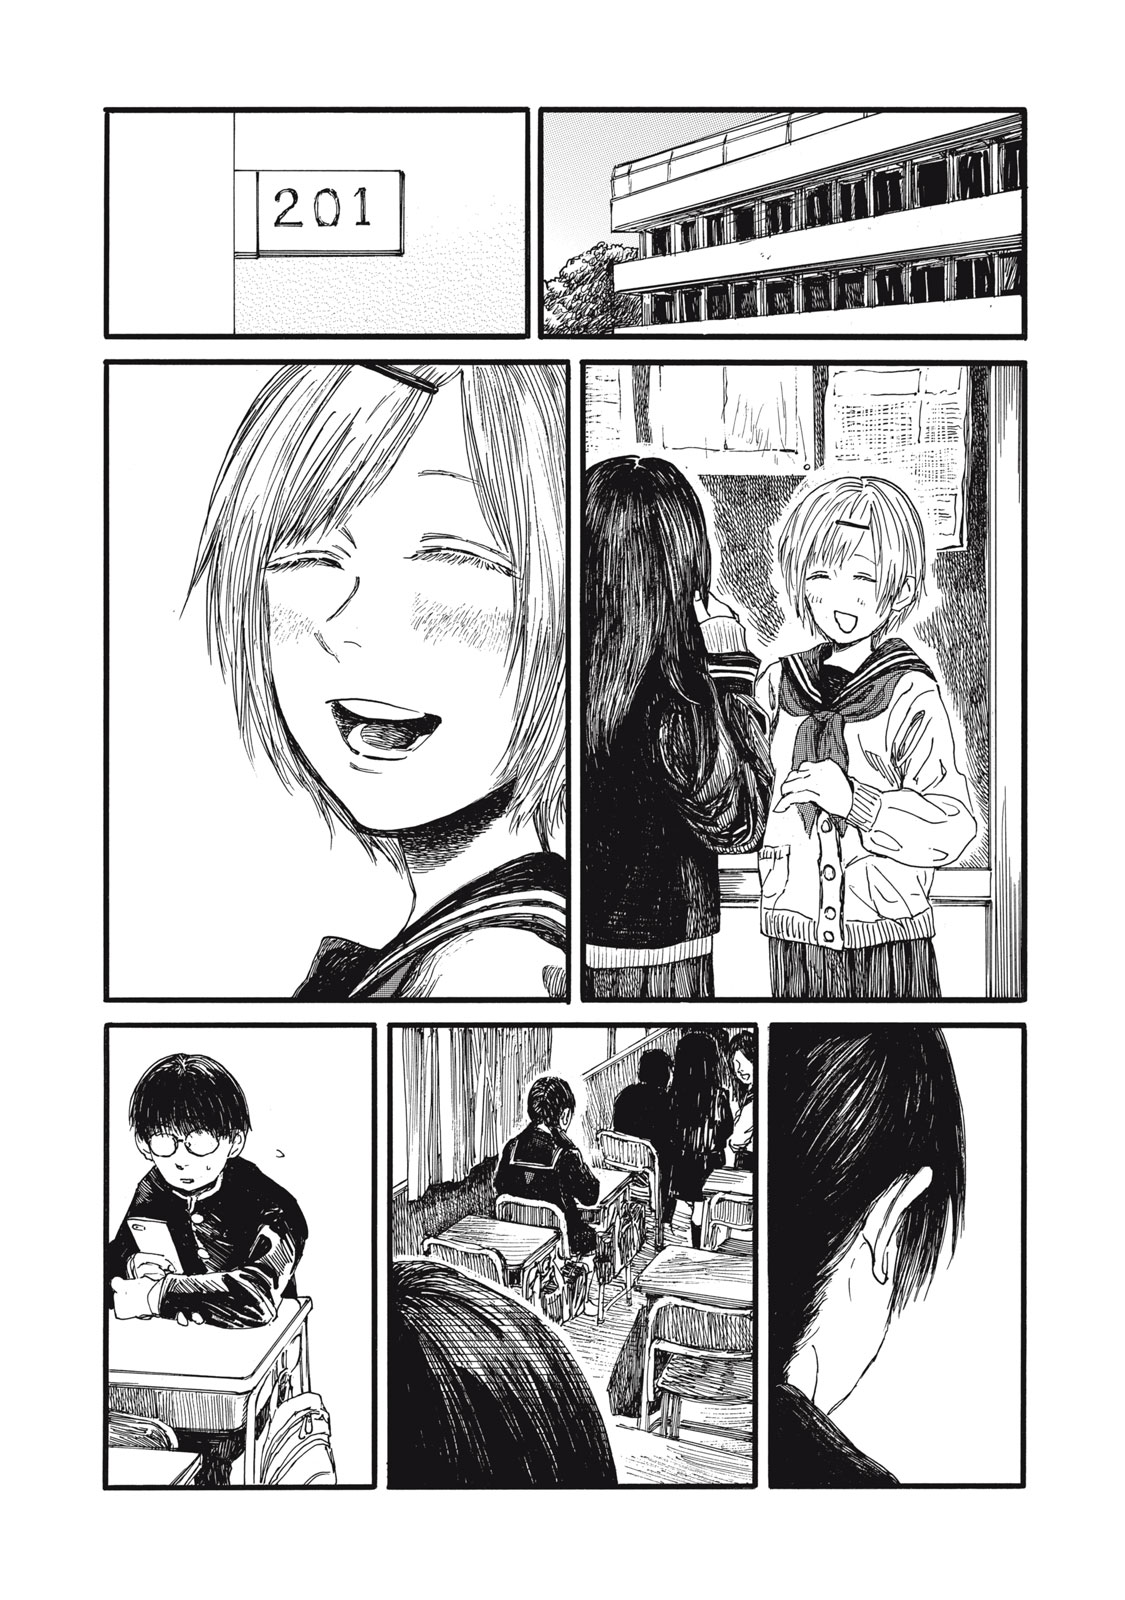 Watashi no Hara no Naka no Bakemono - Chapter 39 - Page 1